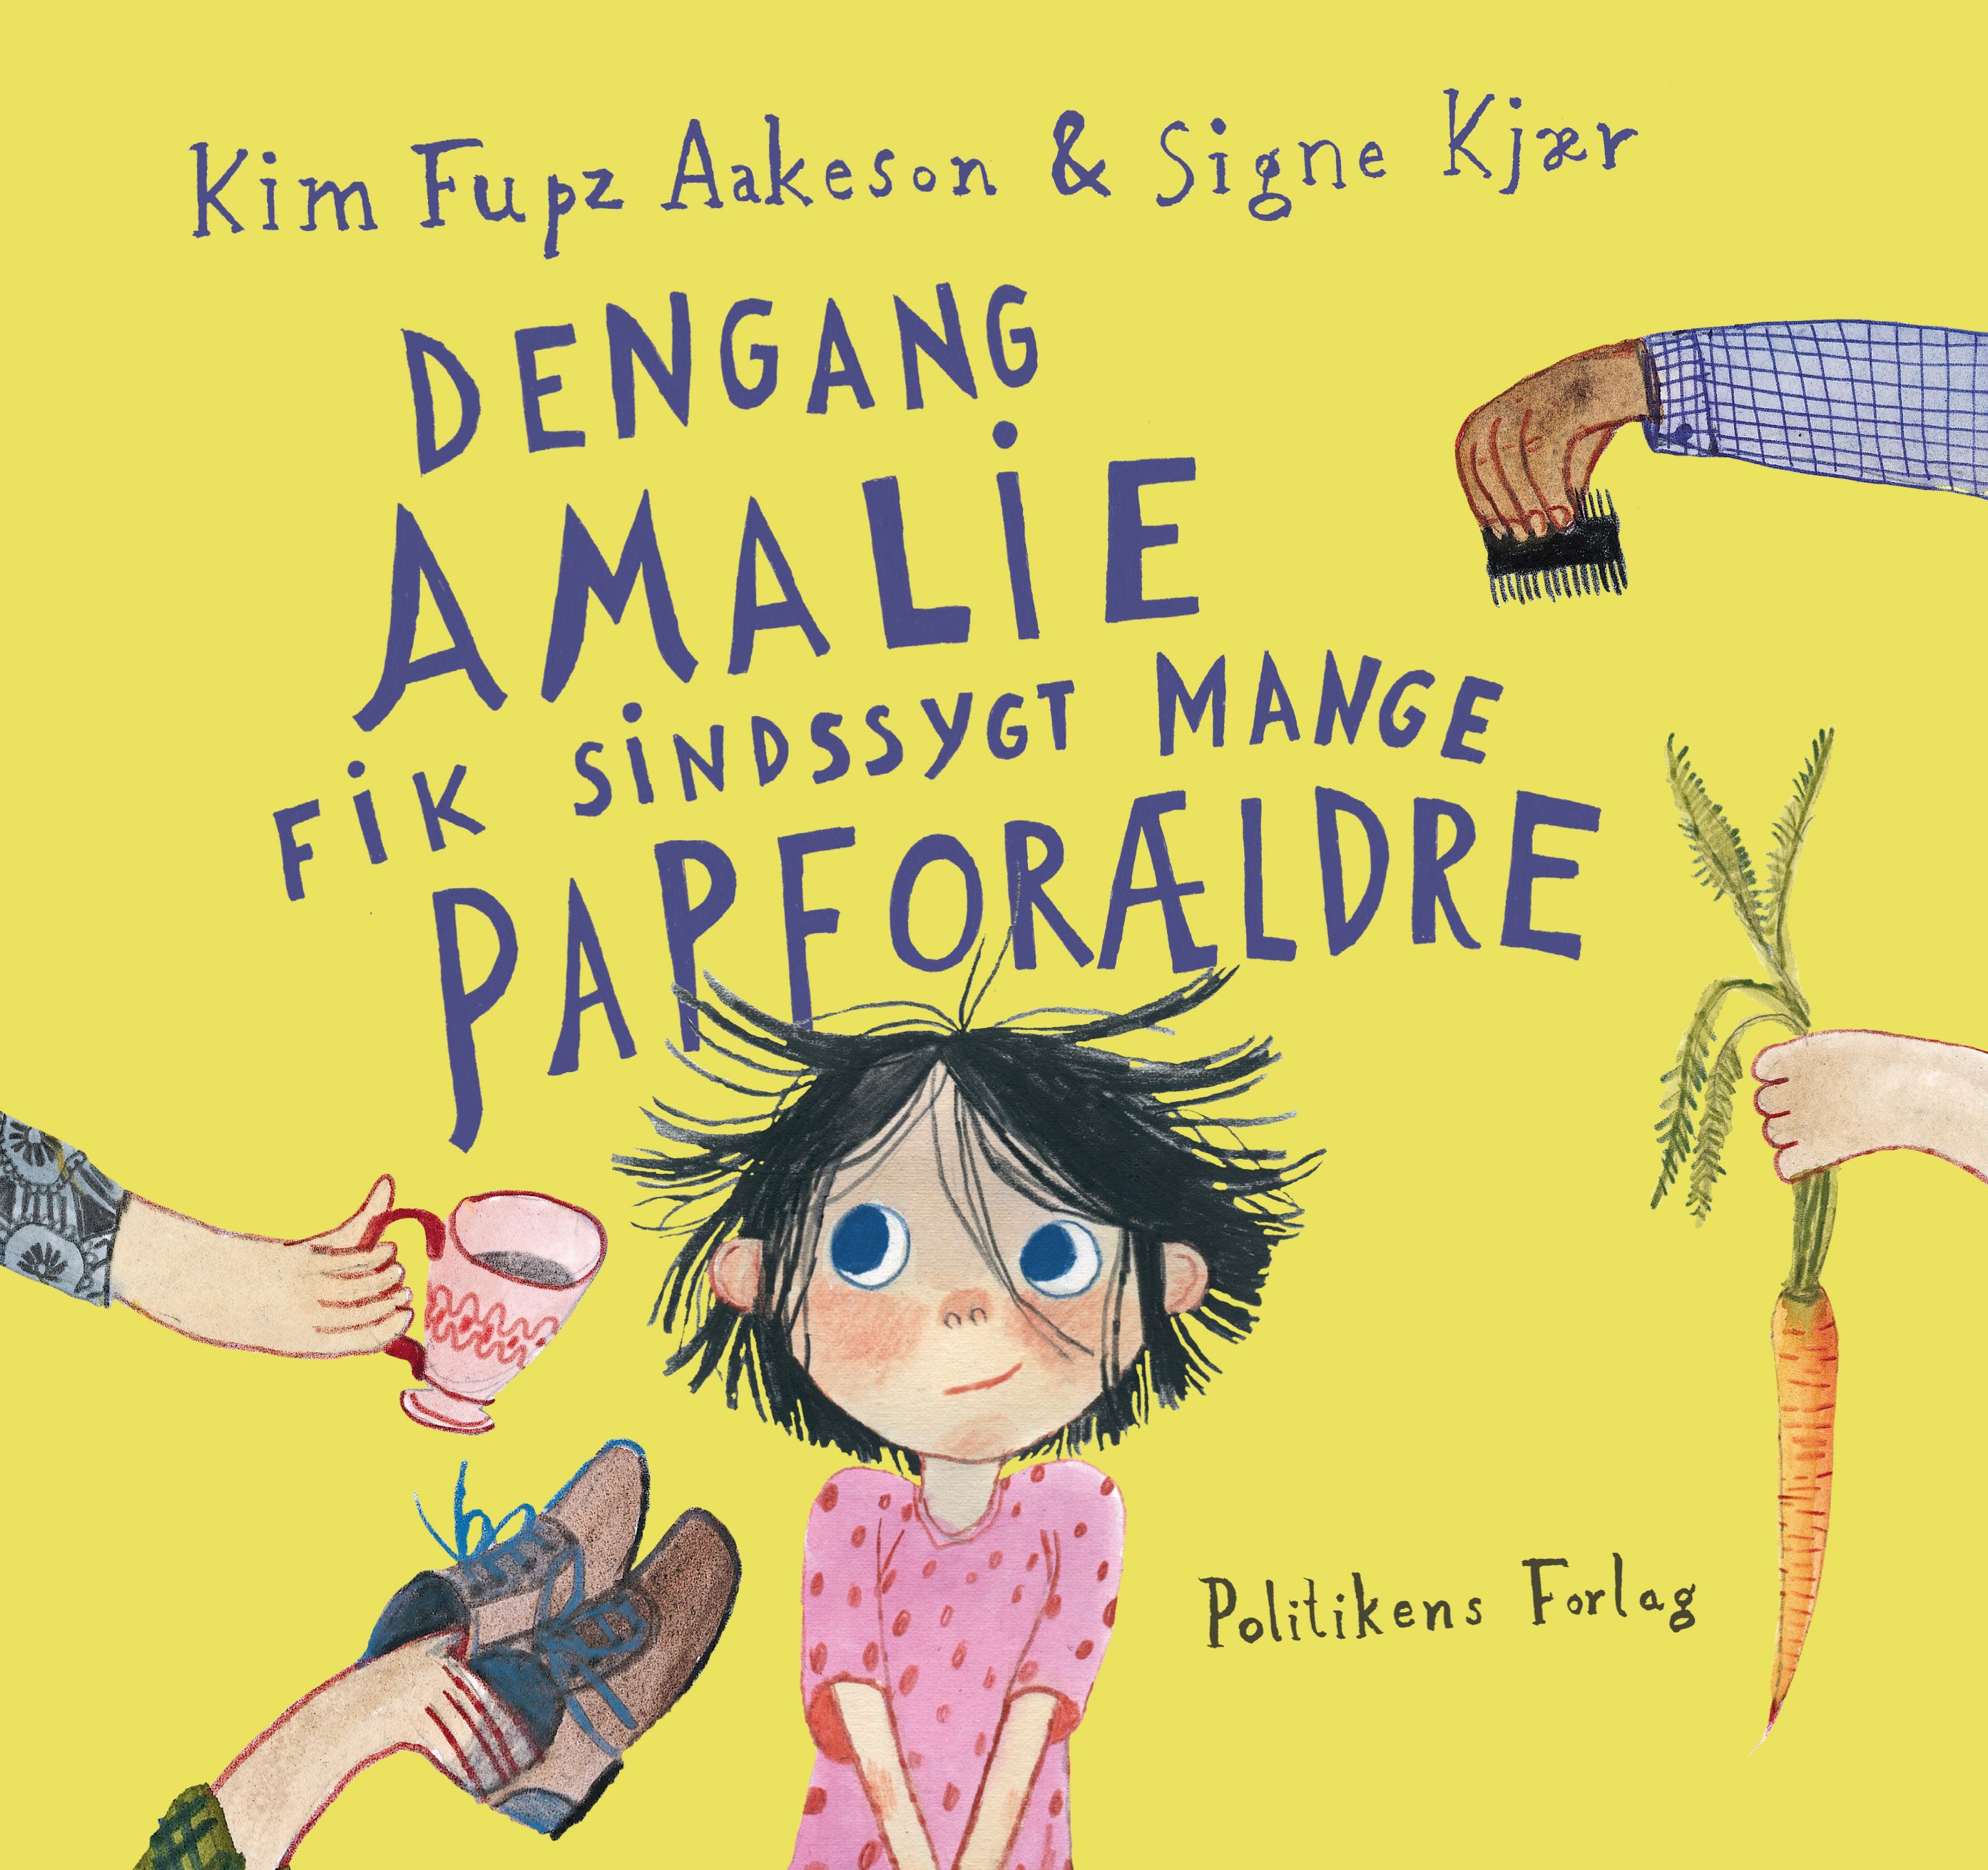 Dengang Amalie fik sindssygt mange papforældre, e-bok av Kim Fupz Aakeson